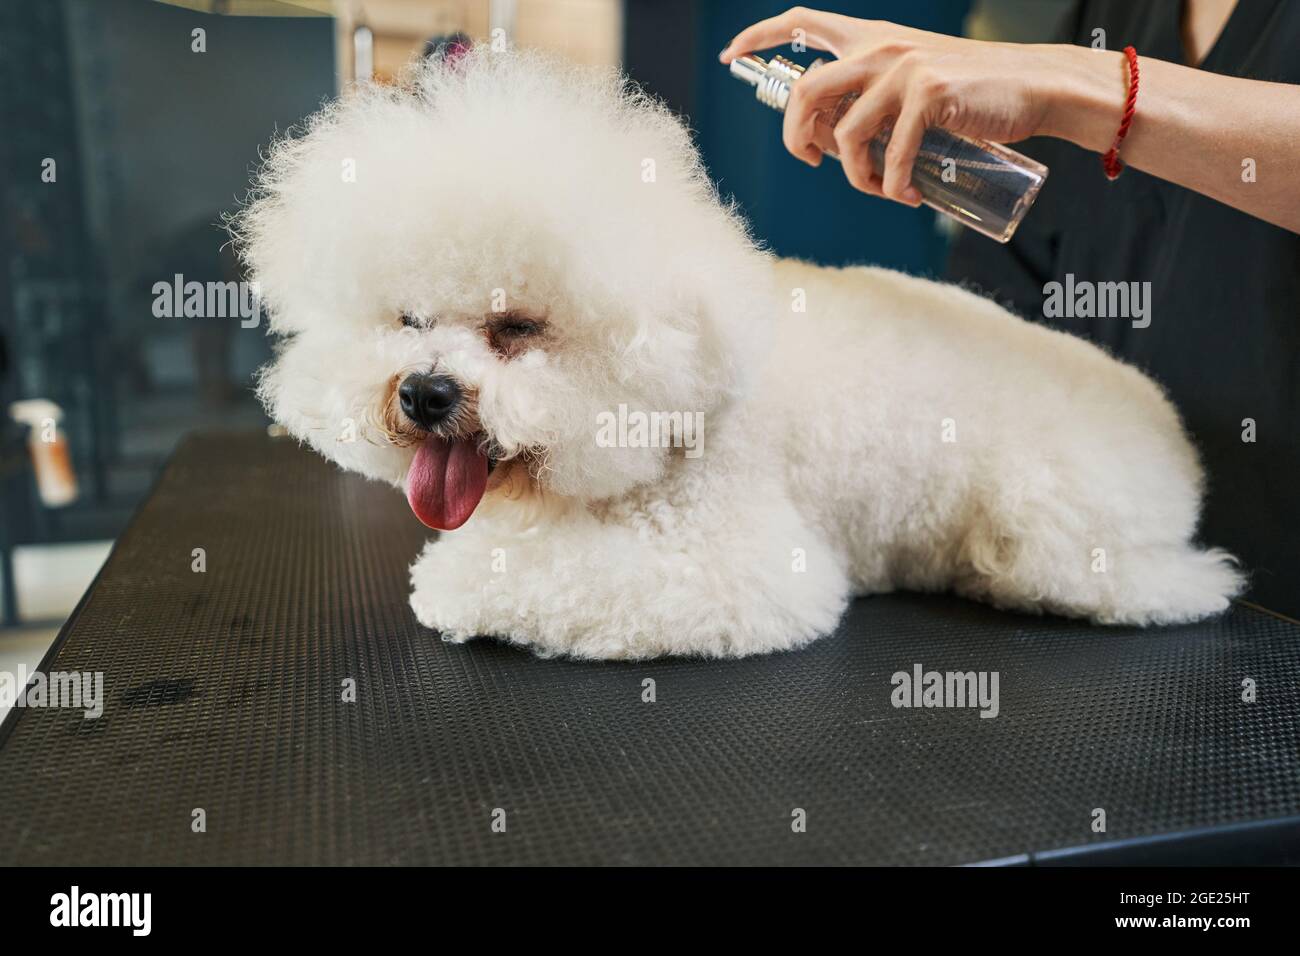 Applying hair detangler on the fur of fluffy dog Stock Photo